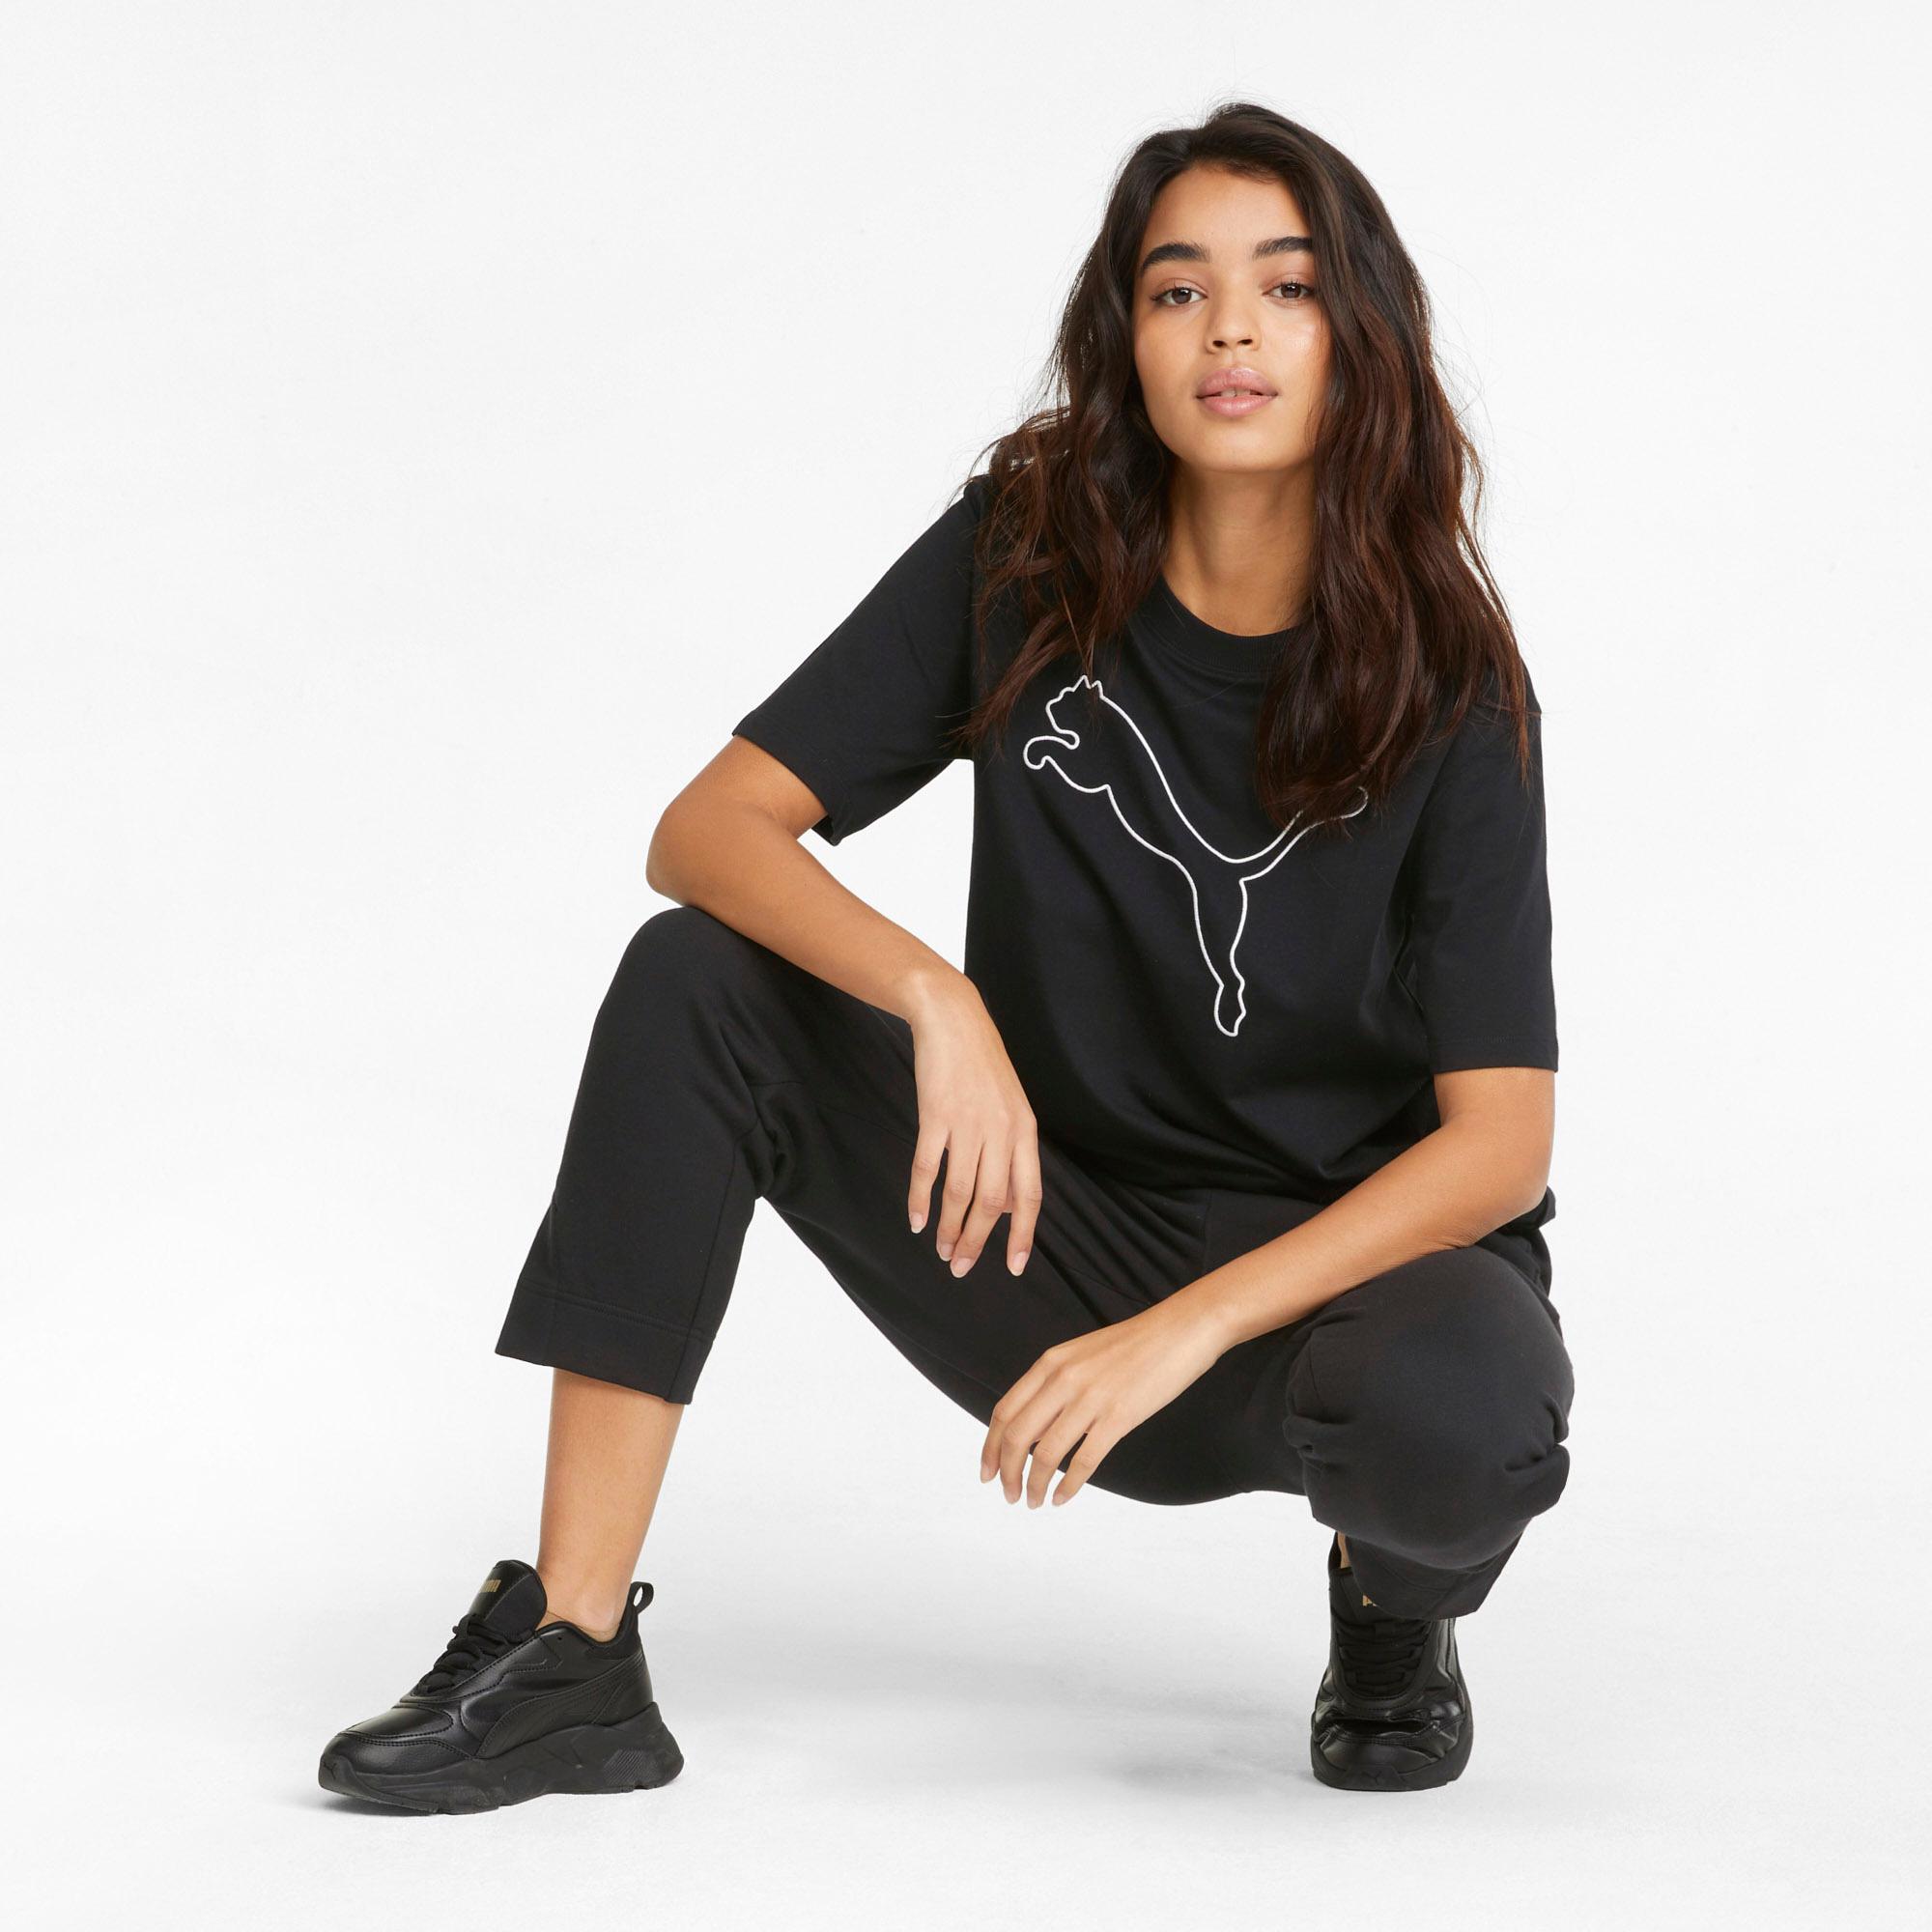 Informationen zum Versandhandel PUMA HER black SportScheck kaufen Online Shop puma Damen im von T-Shirt